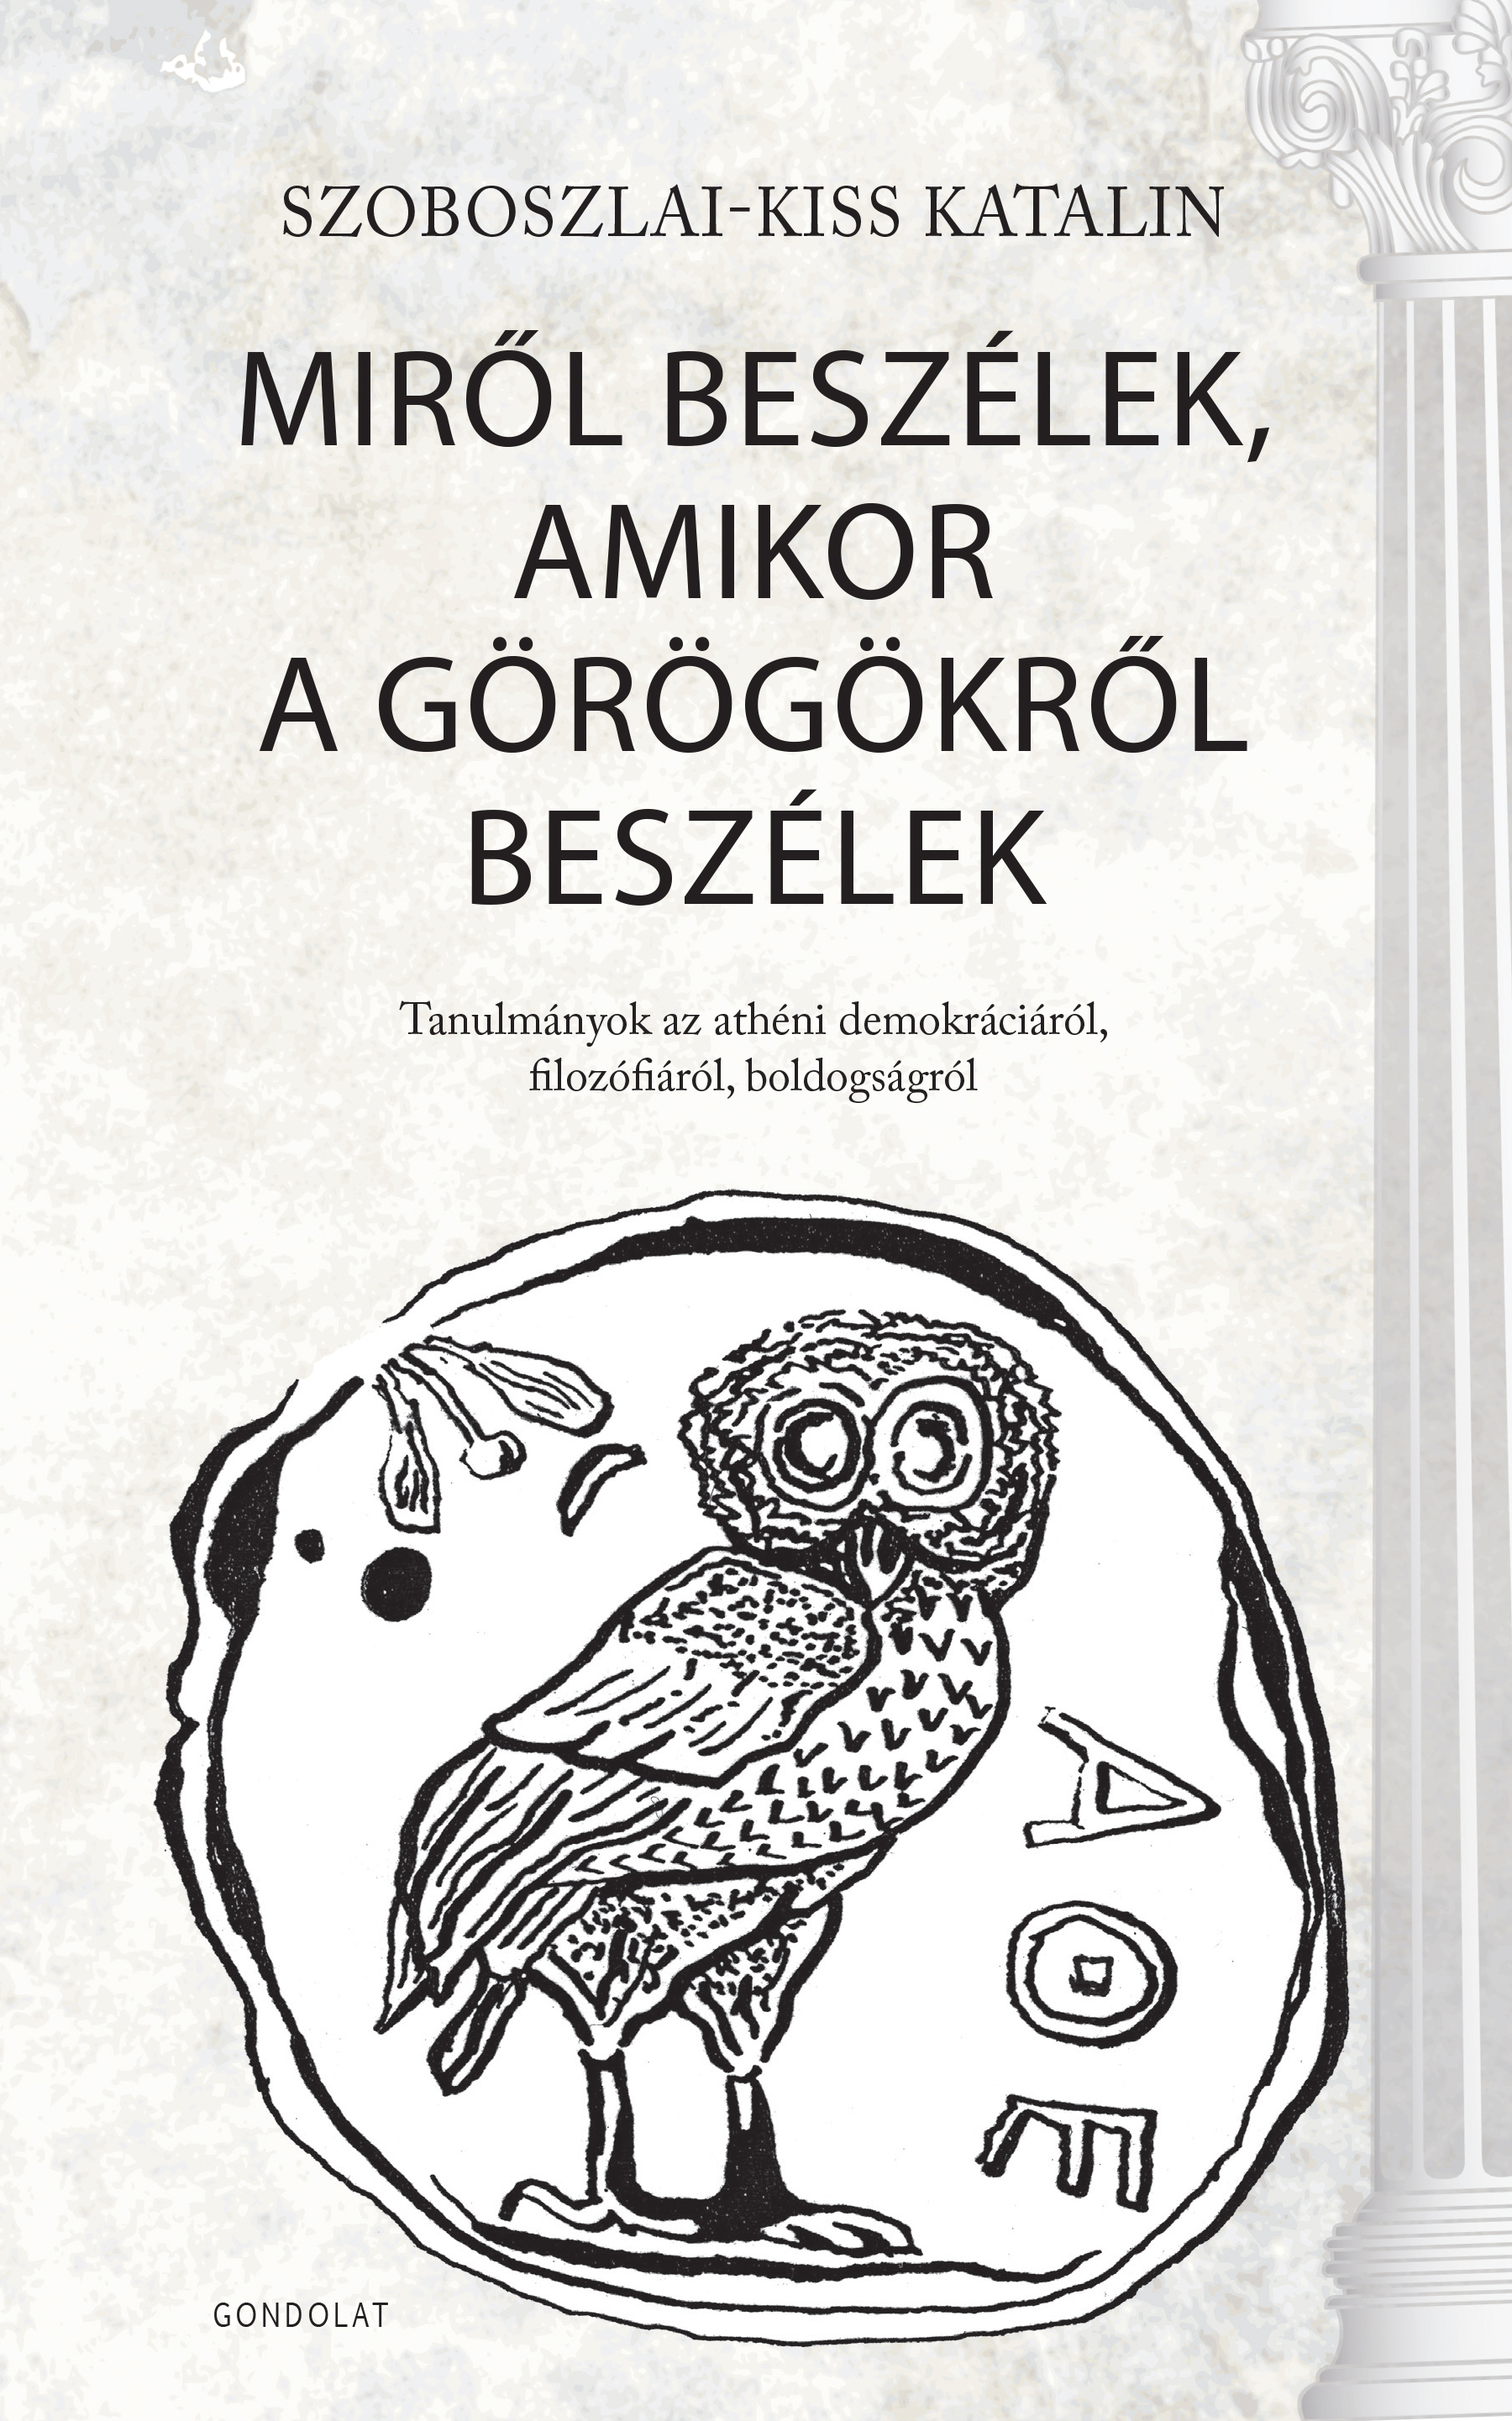 SzoboszlaiKatalin-cover.jpg